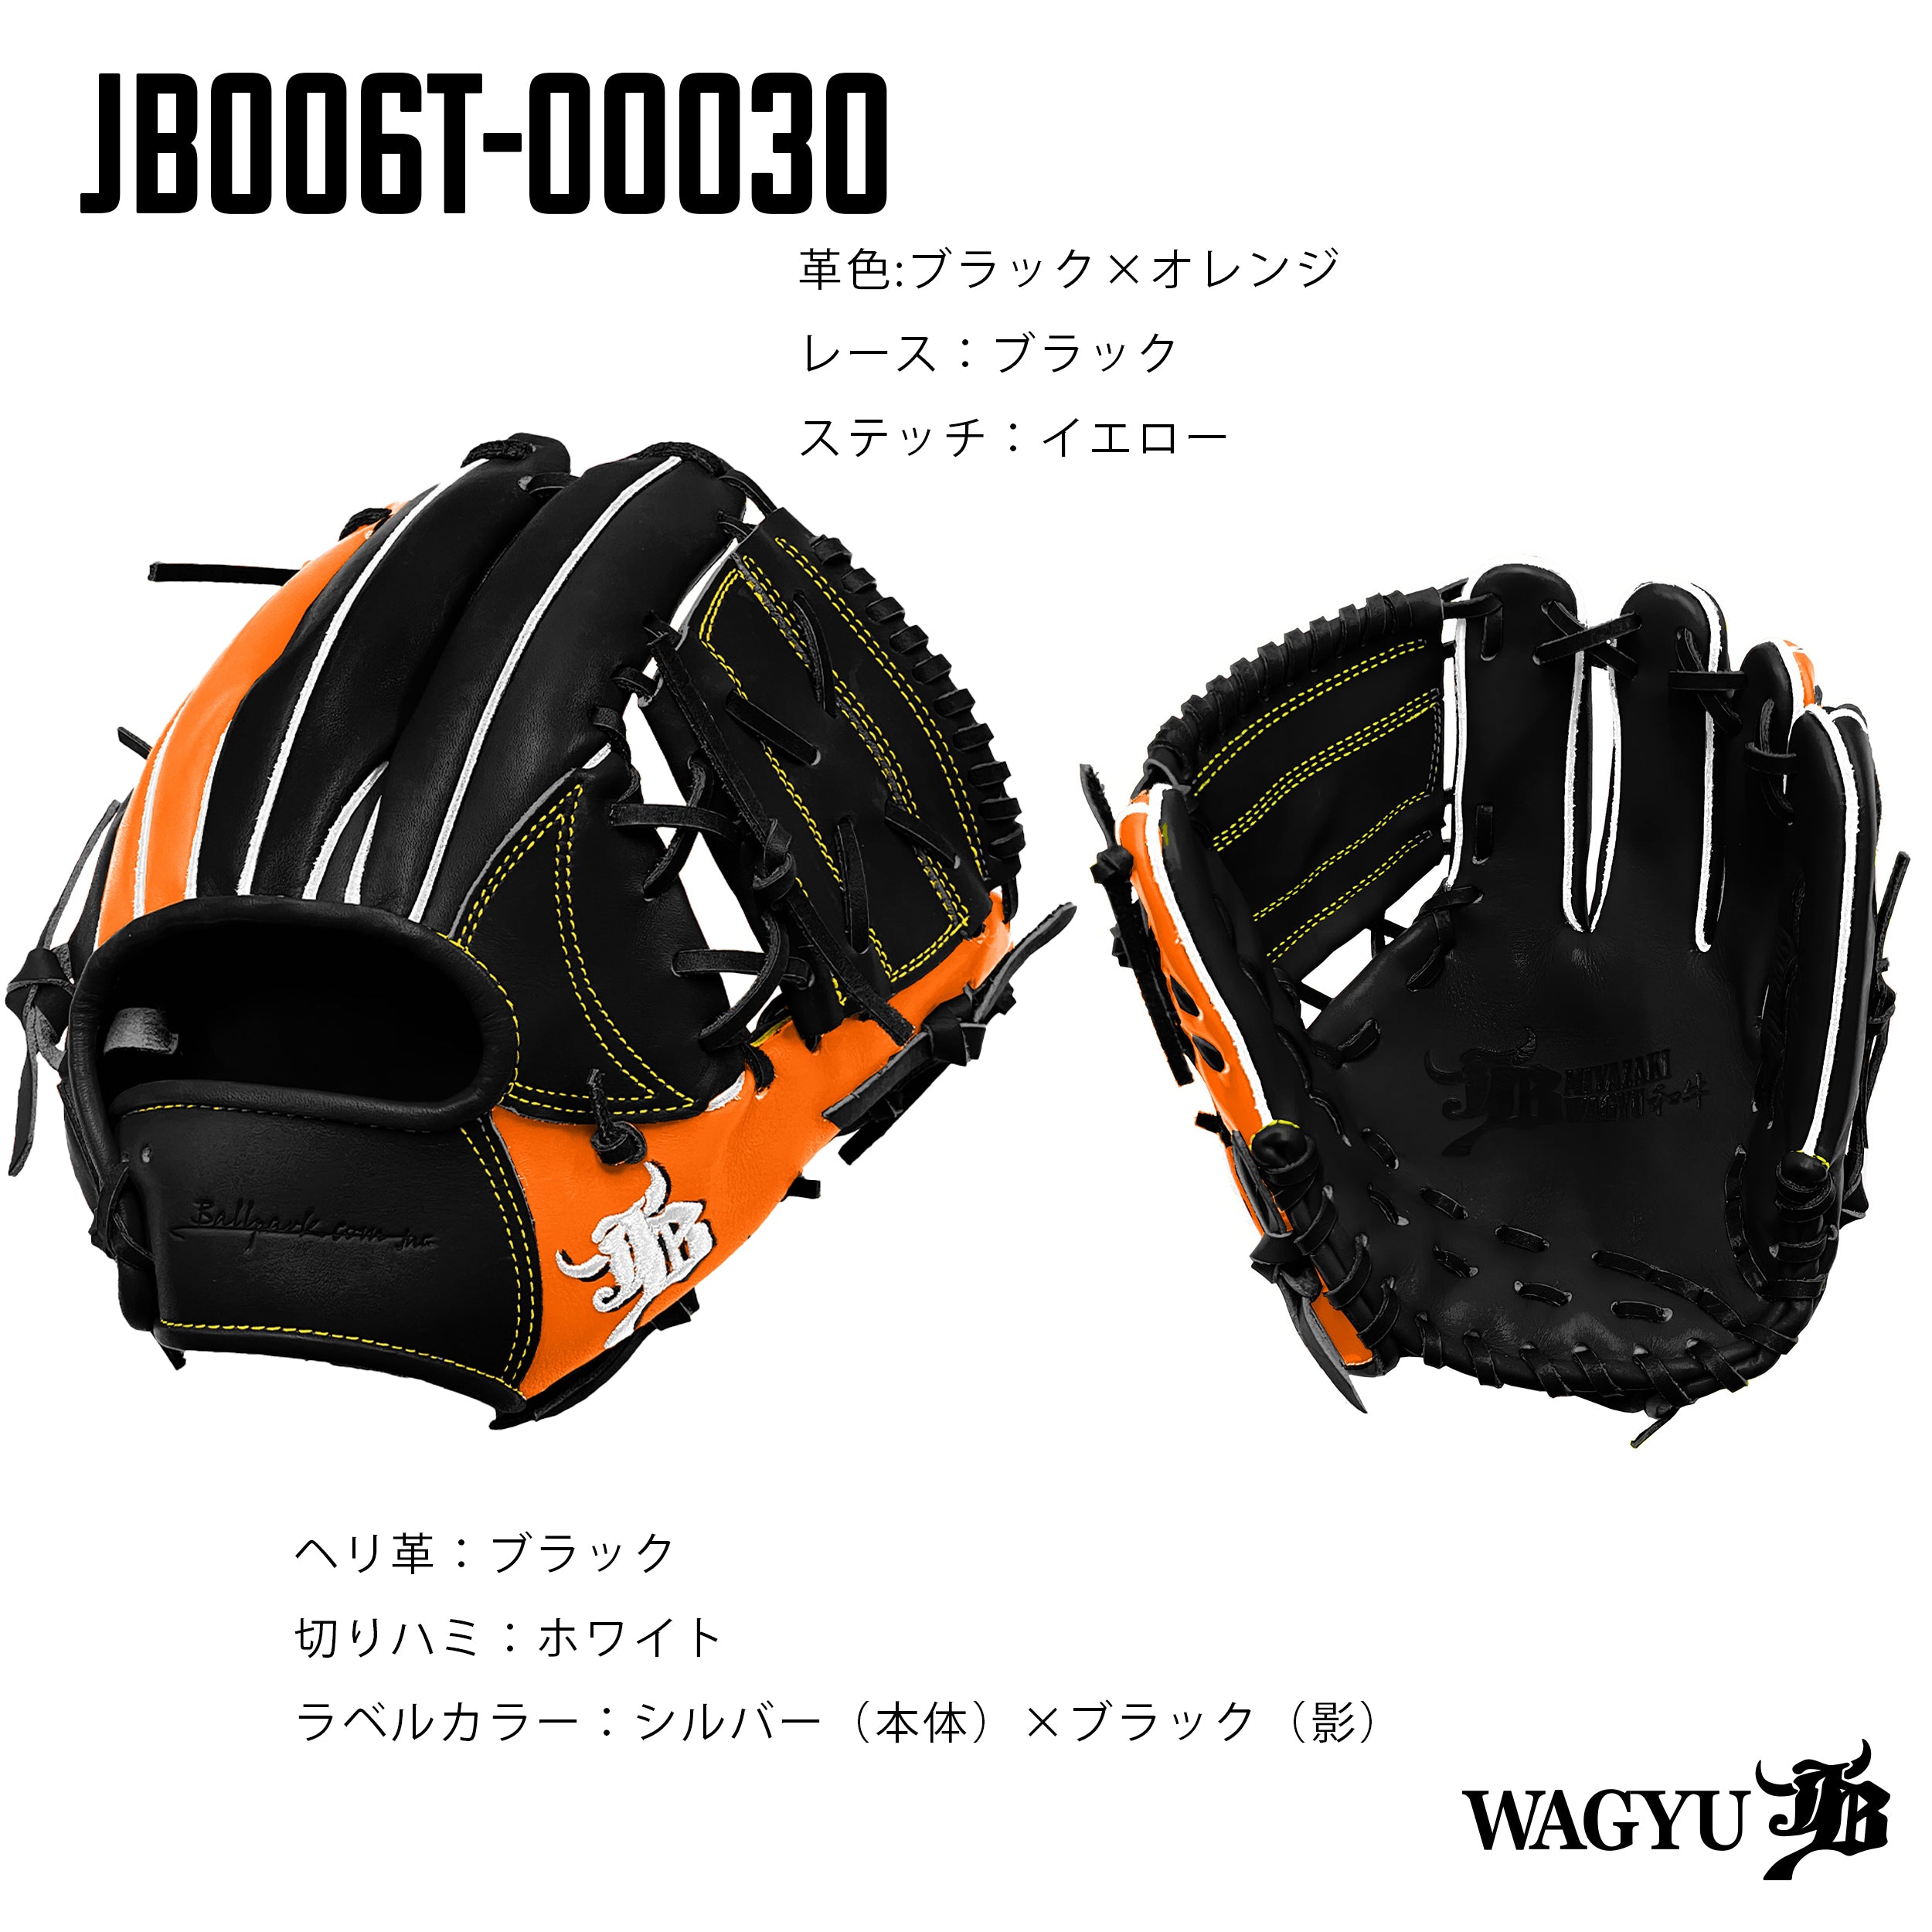 WAGYU JBパターンオーダーグラブ/006Tモデル – ボールパーク 